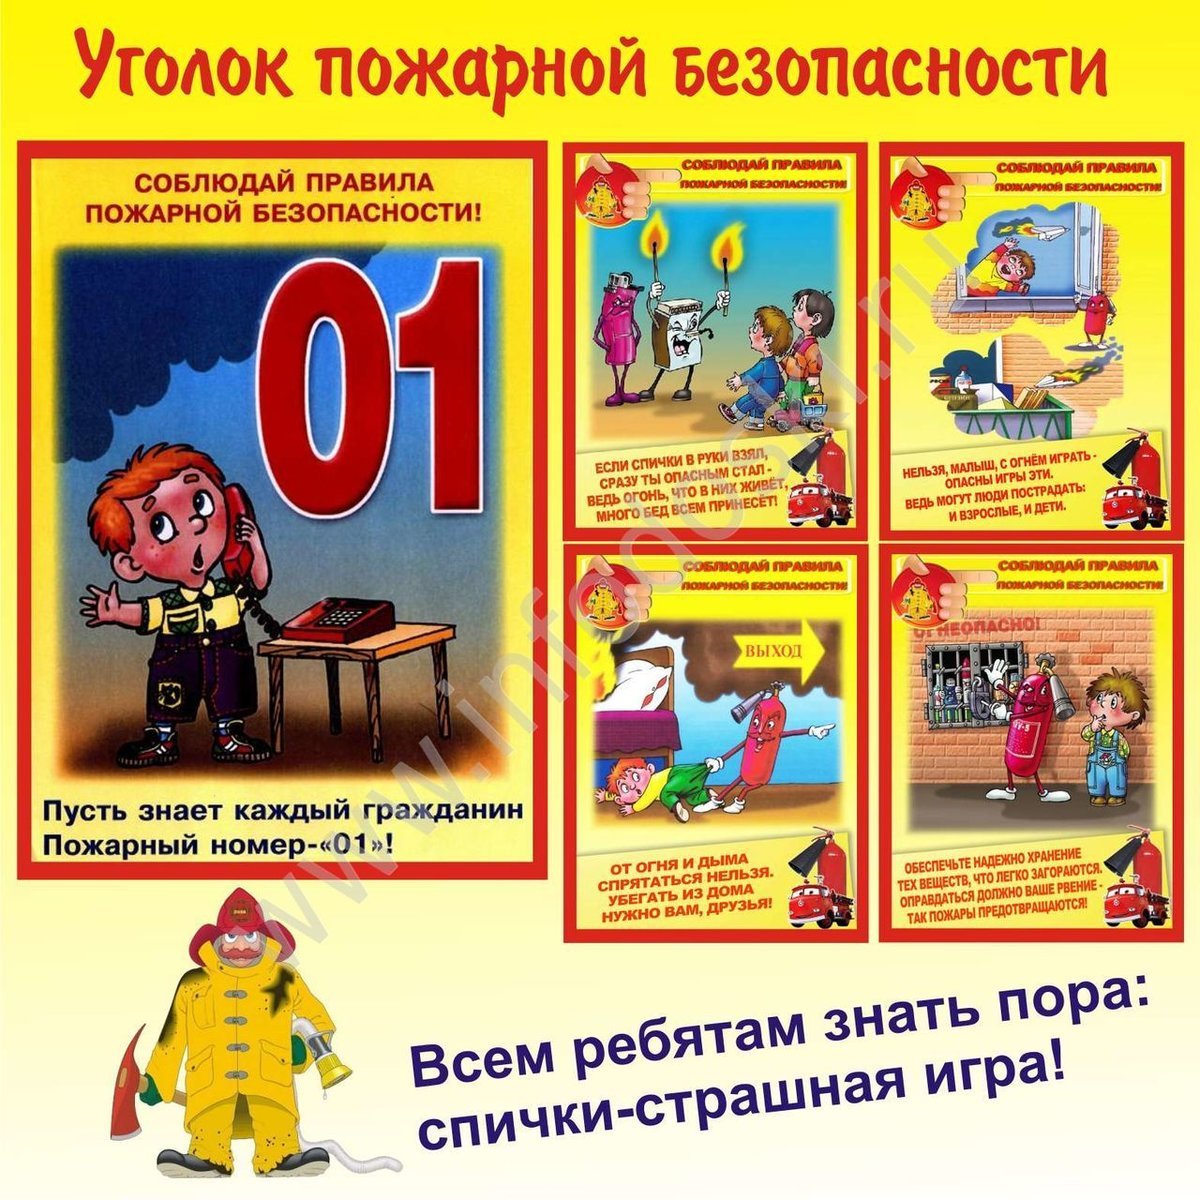 Пожарная безопасность для детей